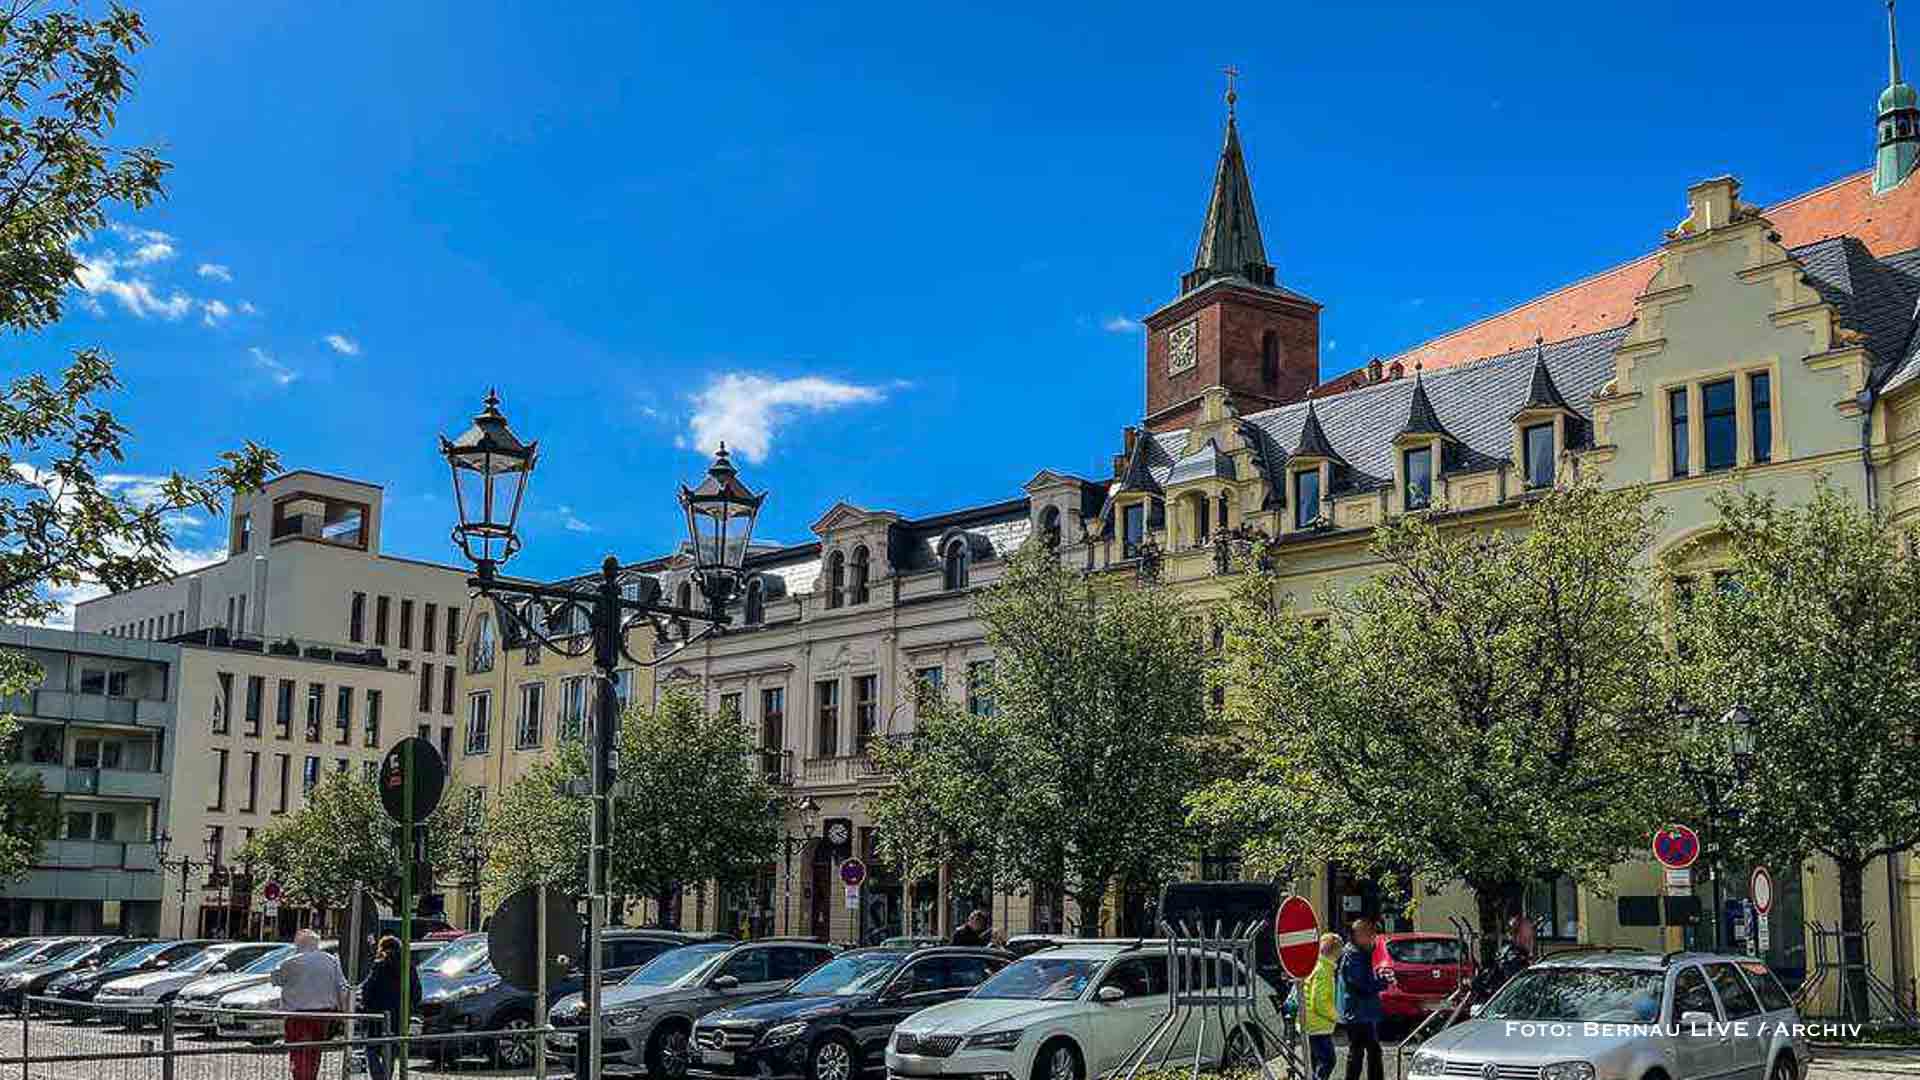 Marktplatz in Bernau wird demnächst wieder zum Parkplatz